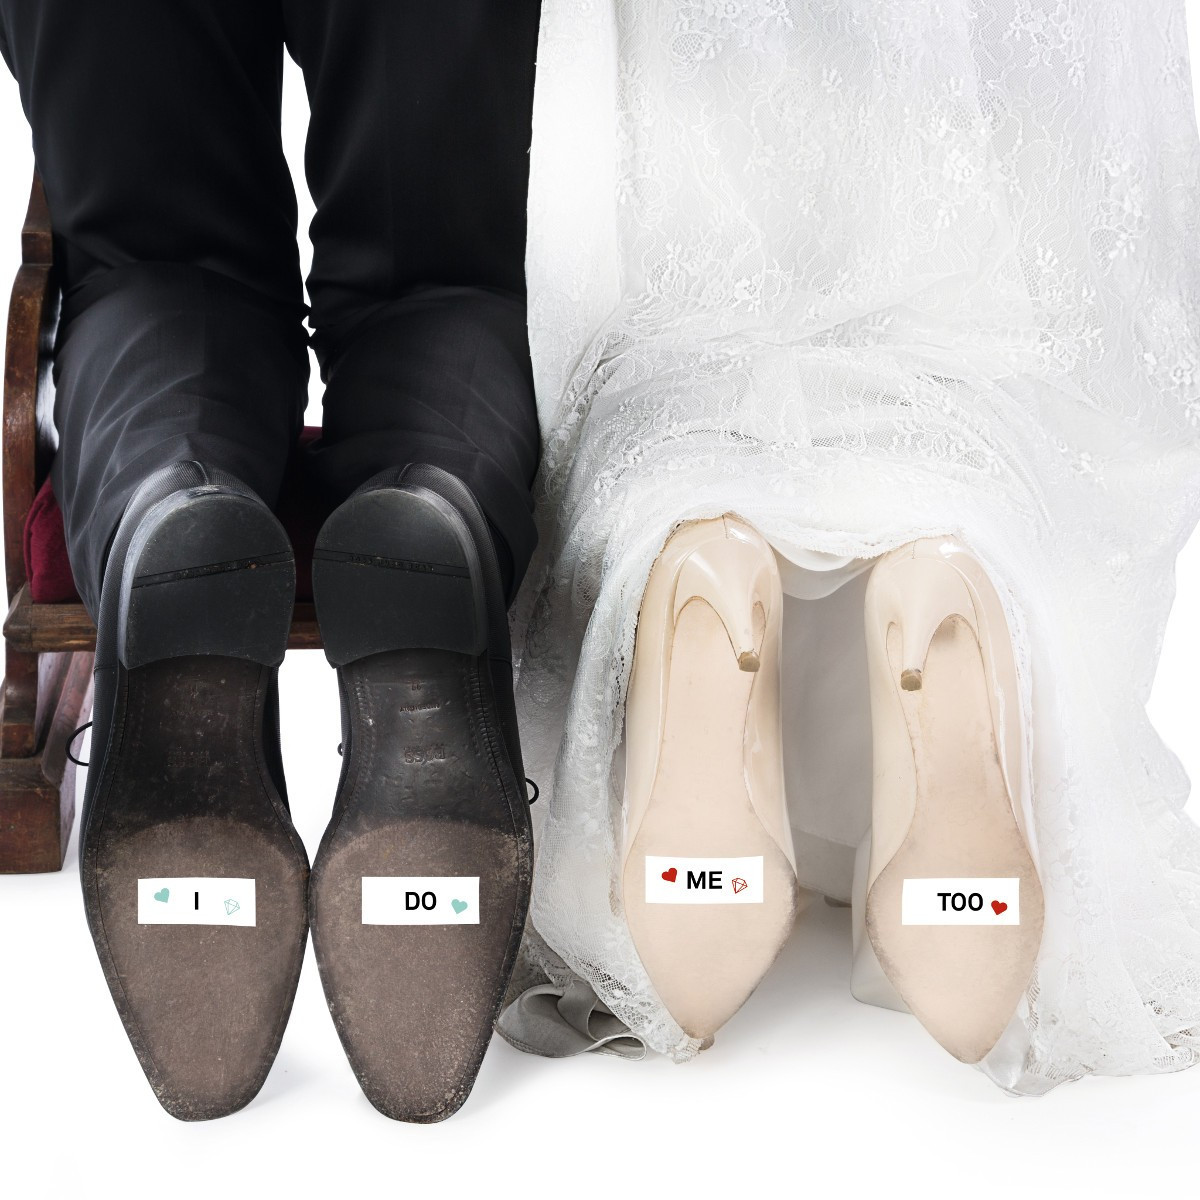 Witzige Geschenkideen
 Witzige Schuhsohlen Aufkleber zur Hochzeit